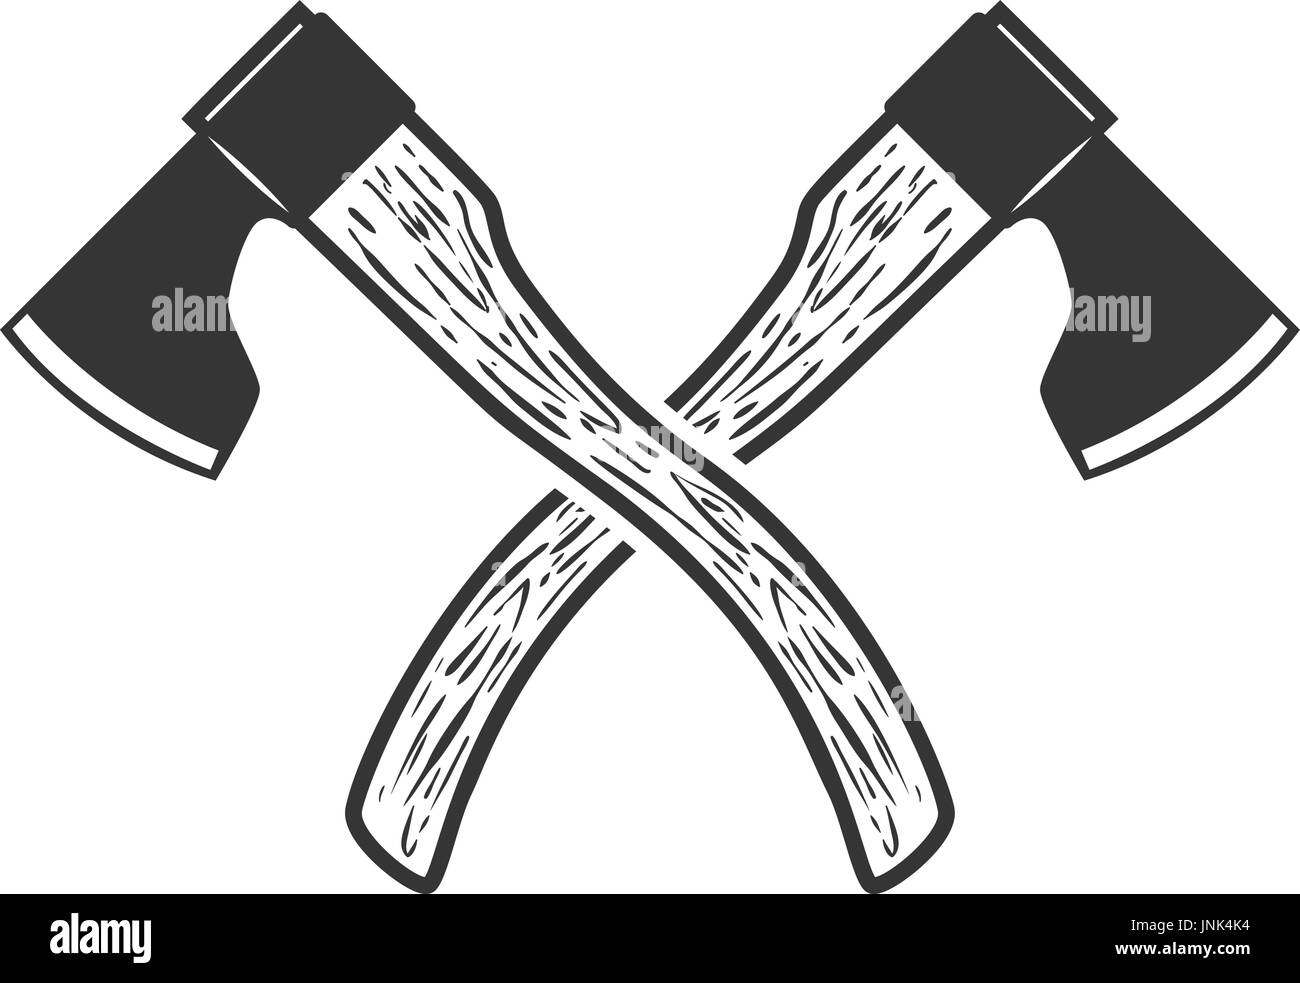 Gekreuzte Axt isoliert auf weißem Hintergrund. Vektor-illustration  Stock-Vektorgrafik - Alamy